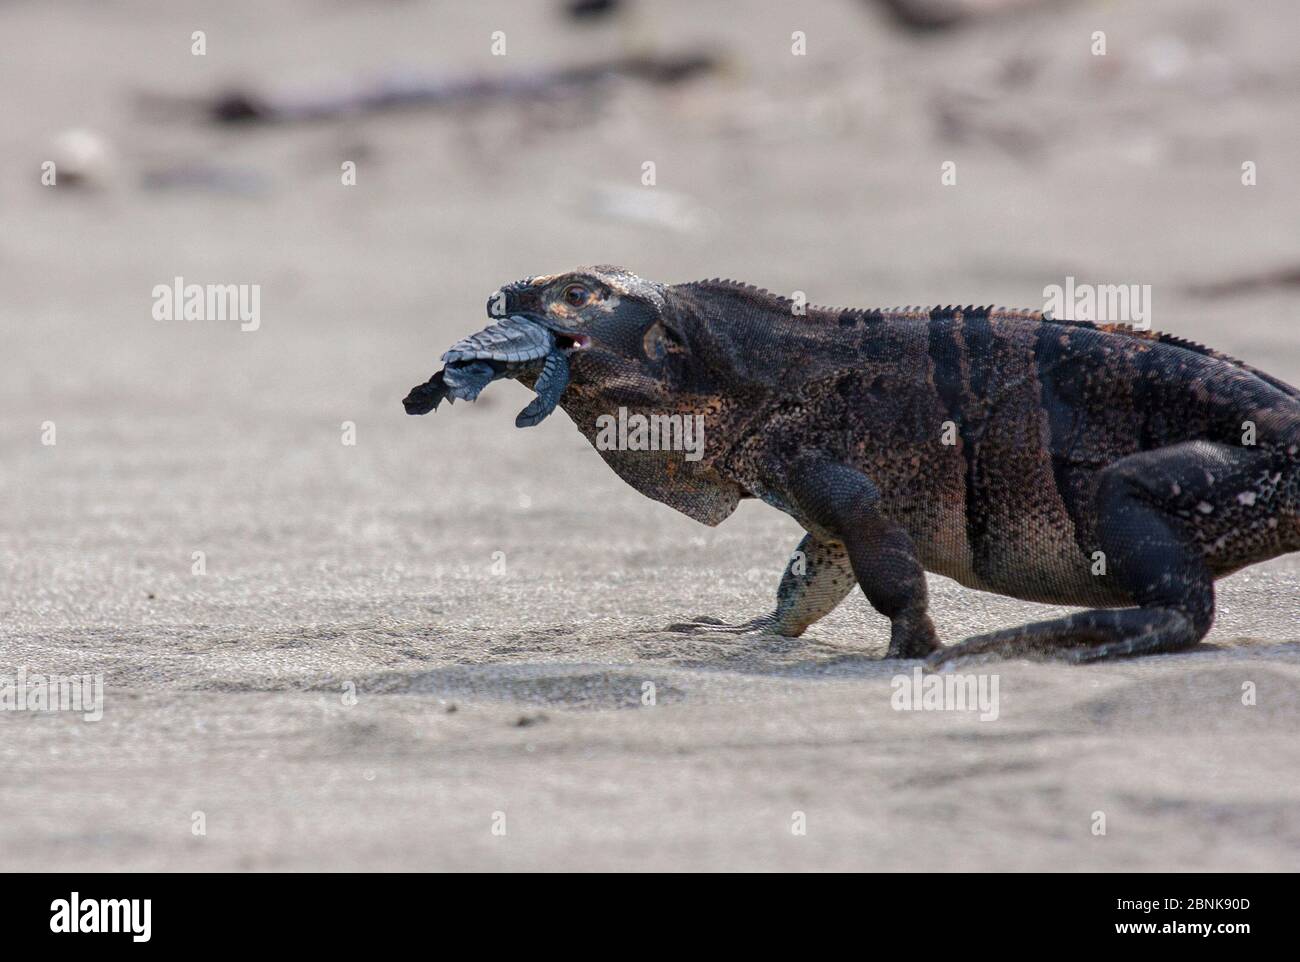 Iguana nera (Ctenosaura similis) che predona la tartaruga di ridley di oliva da cova (Lepichelys olivacea), Nancite, Parco Nazionale di Santa Rosa, Costa Rica. Foto Stock